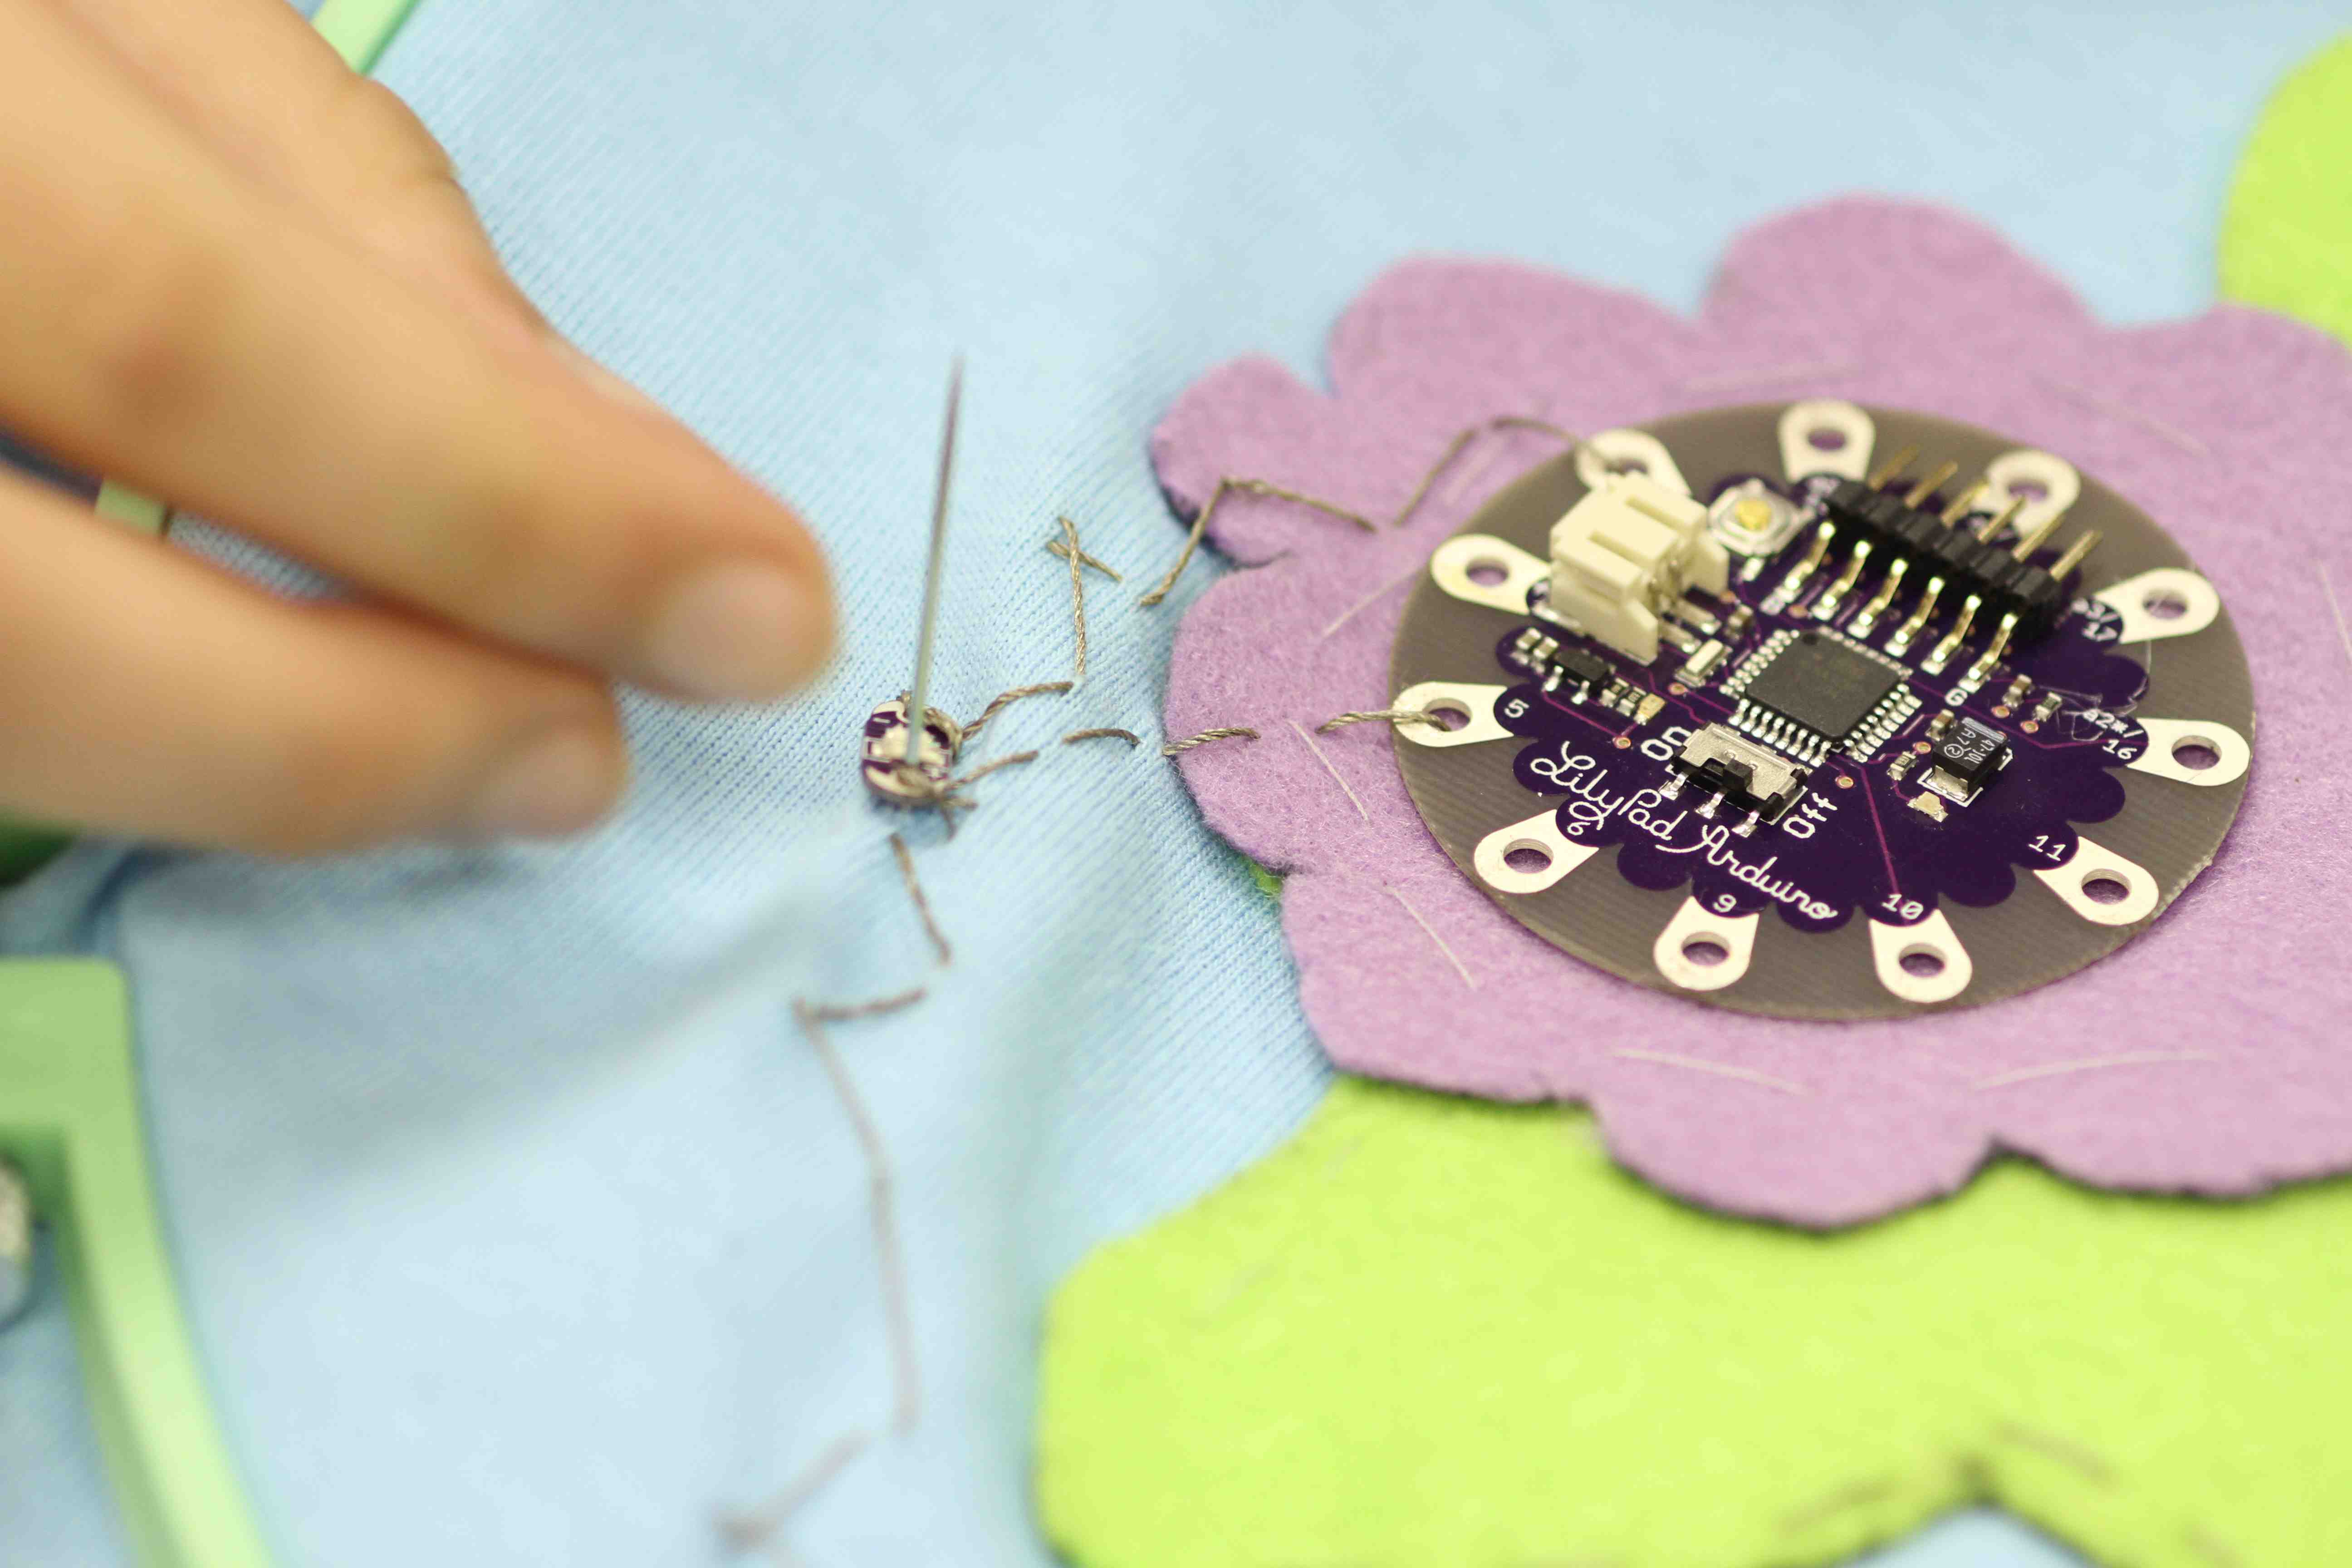 sewing circuits kit